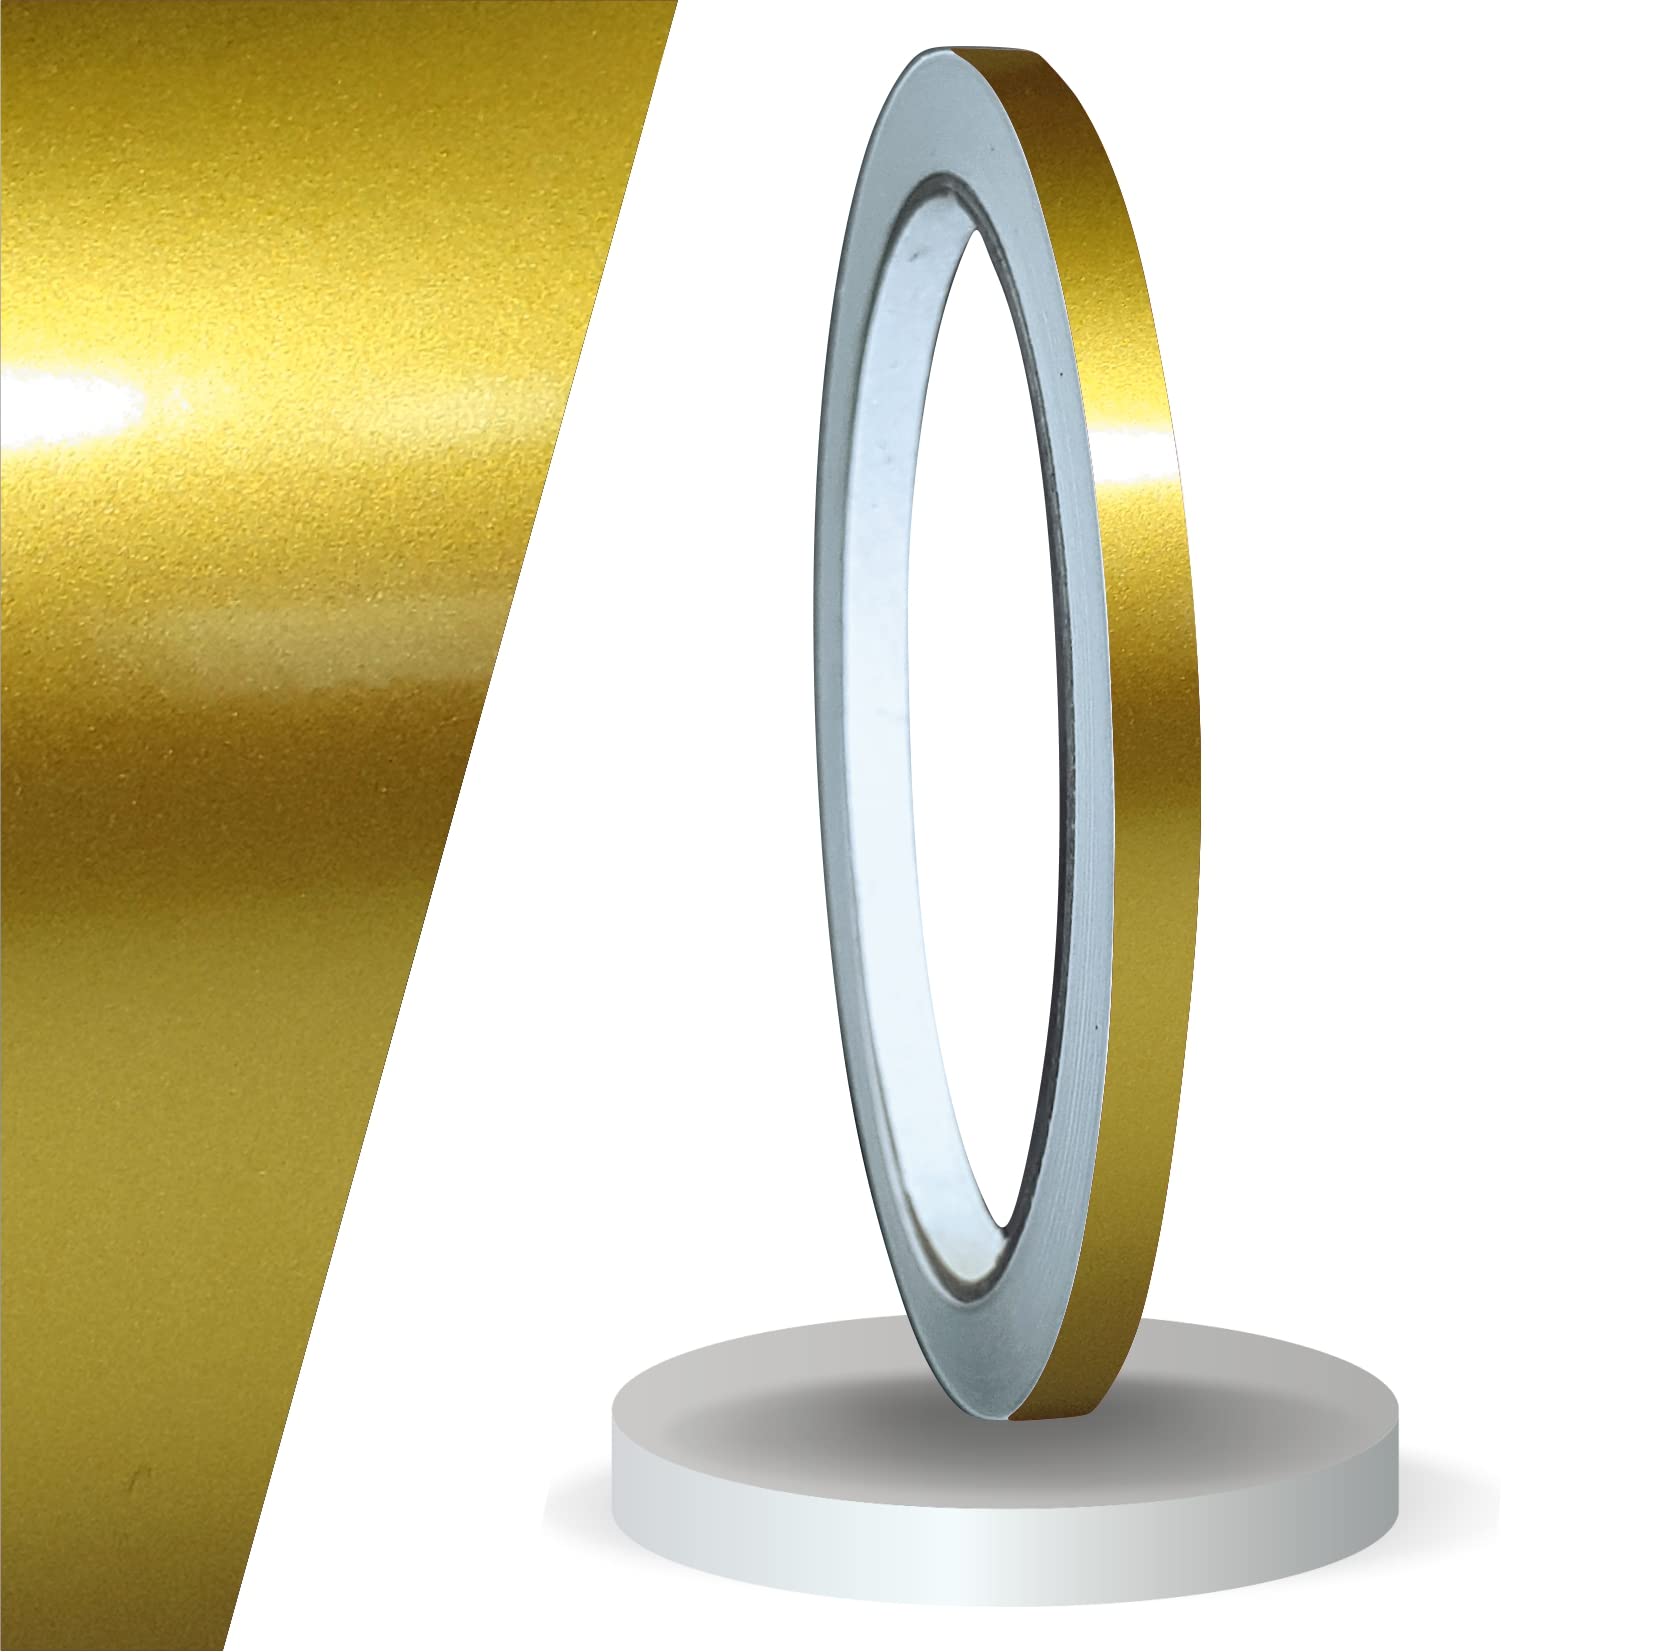 siviwonder Zierstreifen Gold metallic Glanz in in 5 mm Breite und 10 m Länge für Auto Boot Jetski Modellbau Klebeband Dekorstreifen von siviwonder